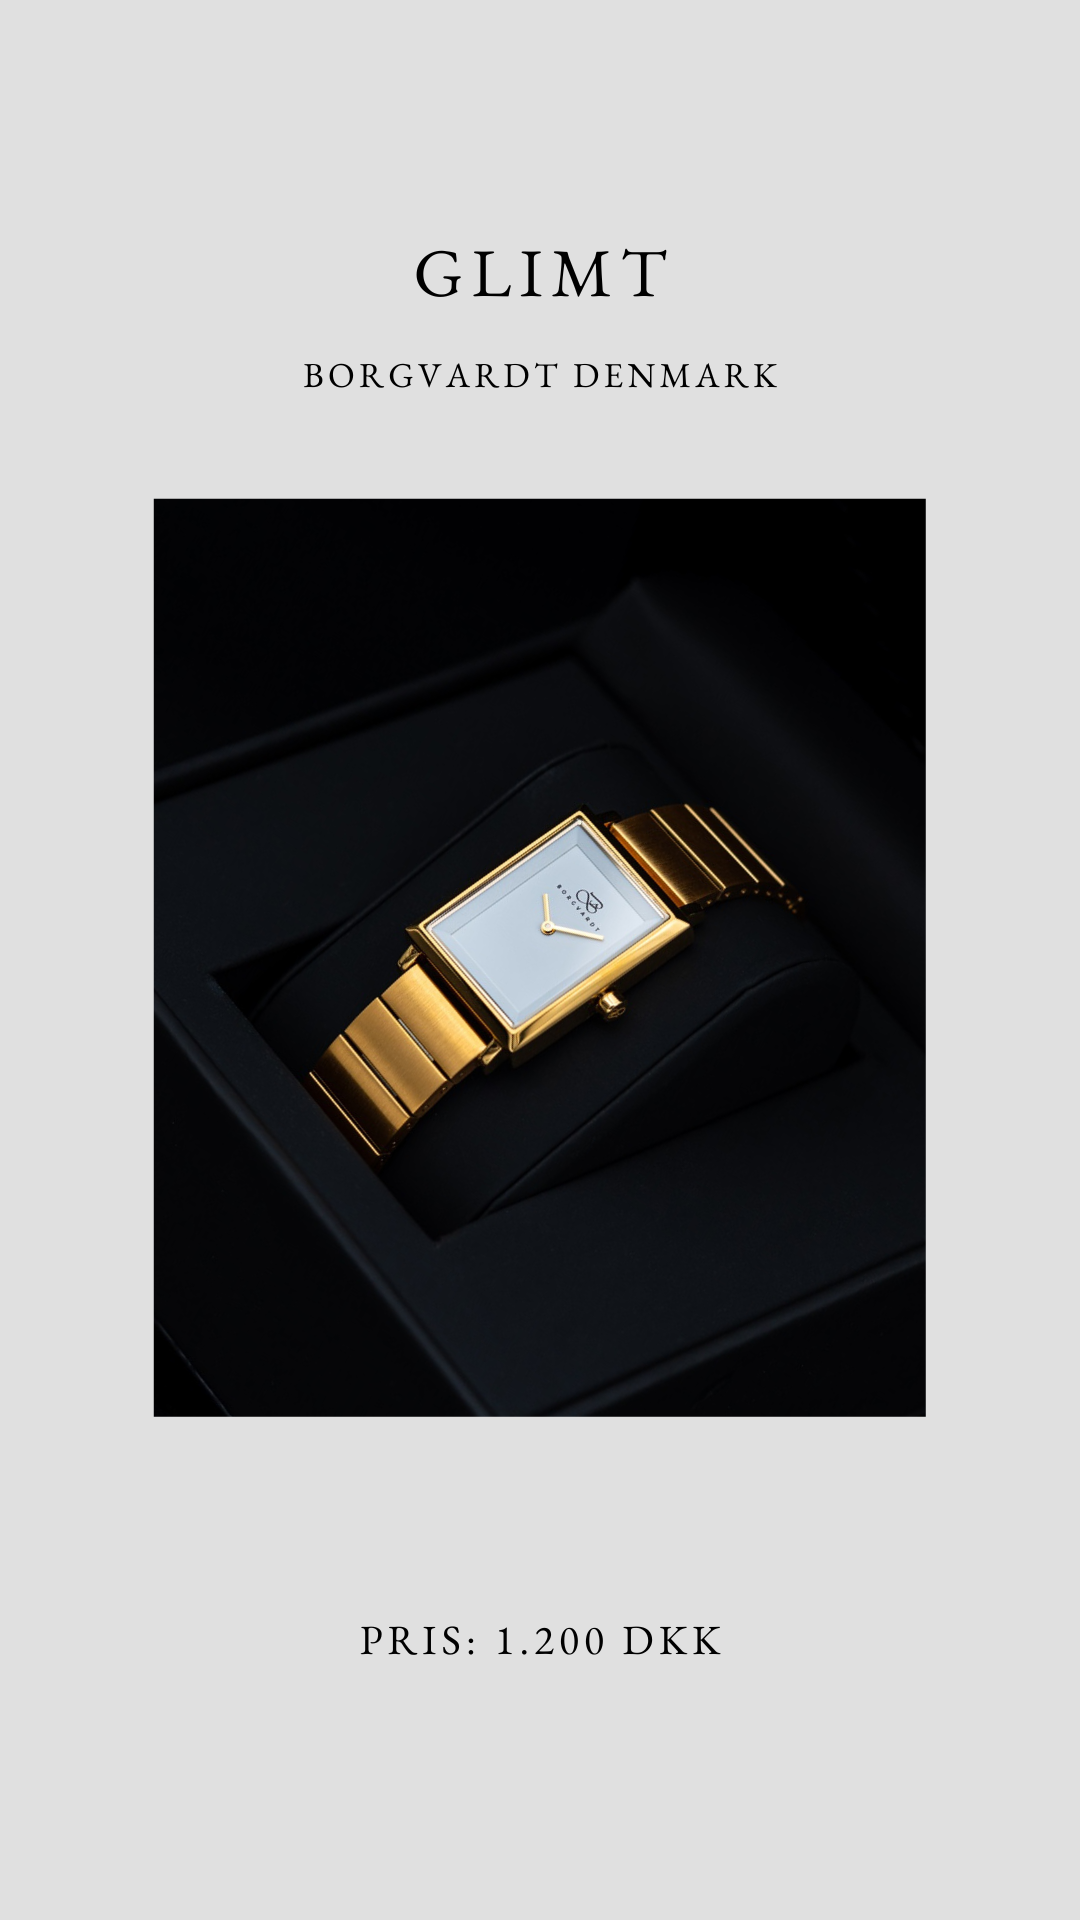 Produkt billede der viser prisen på Borgvardt Glimt uret.